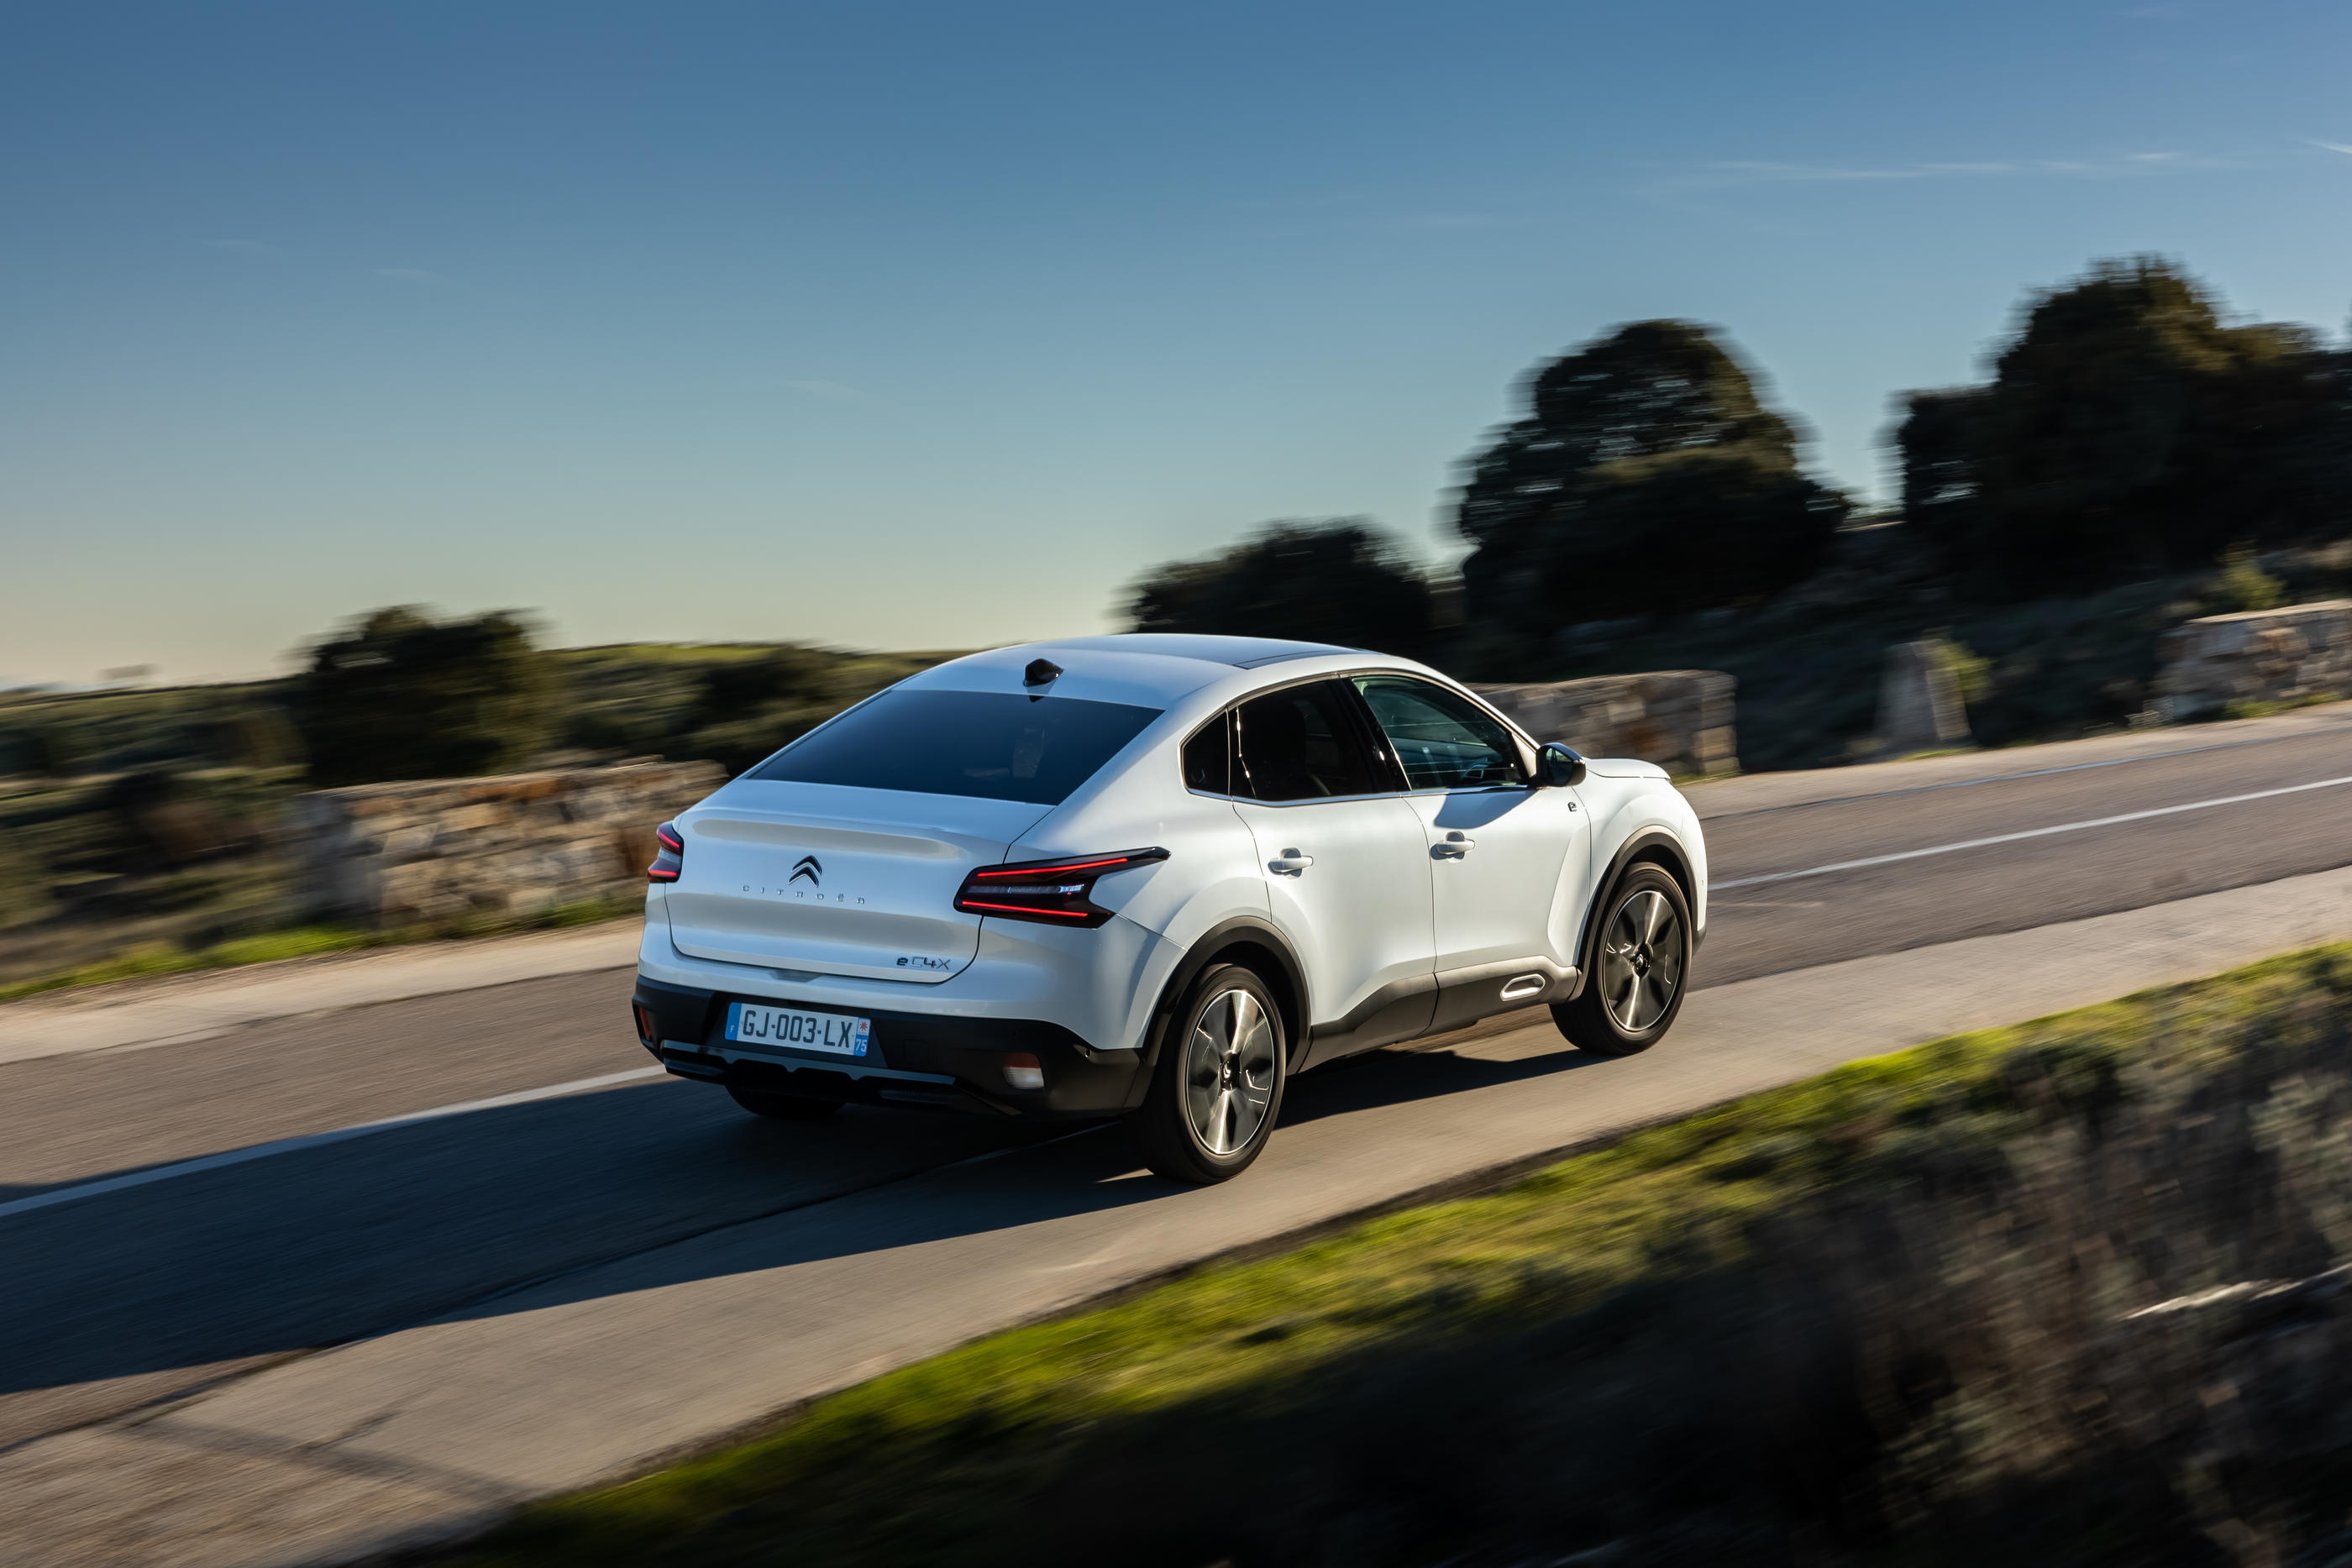 La marque voit dans cette offre une réponse à la demande de «flexibilité» des Français. Citroën/Adrien Cortesi